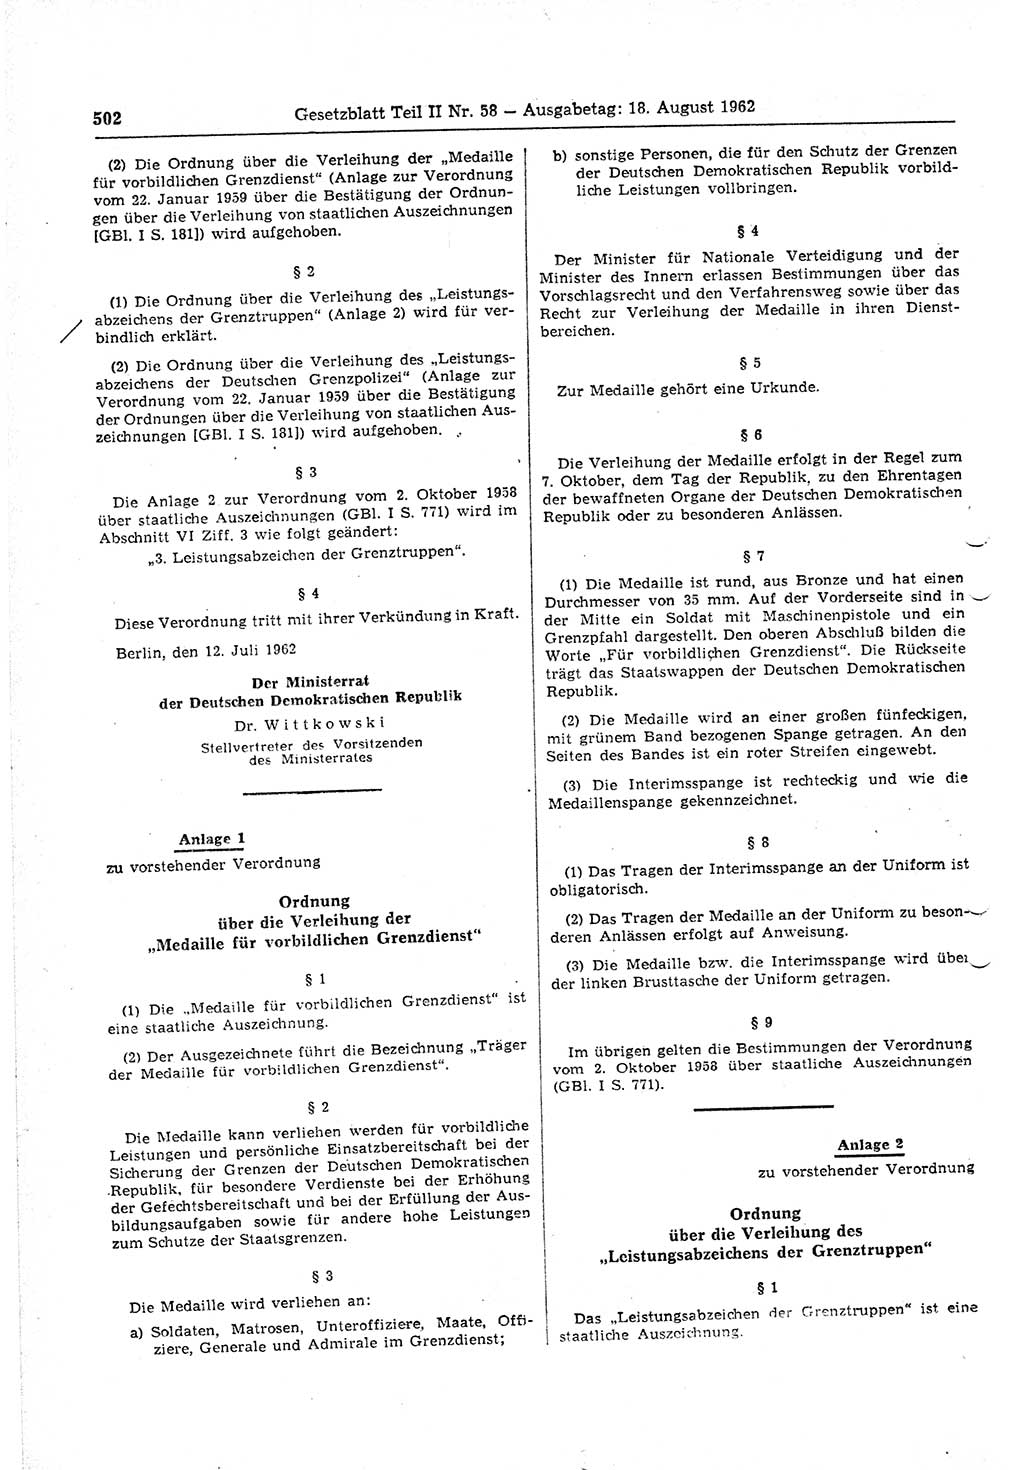 Gesetzblatt (GBl.) der Deutschen Demokratischen Republik (DDR) Teil ⅠⅠ 1962, Seite 502 (GBl. DDR ⅠⅠ 1962, S. 502)